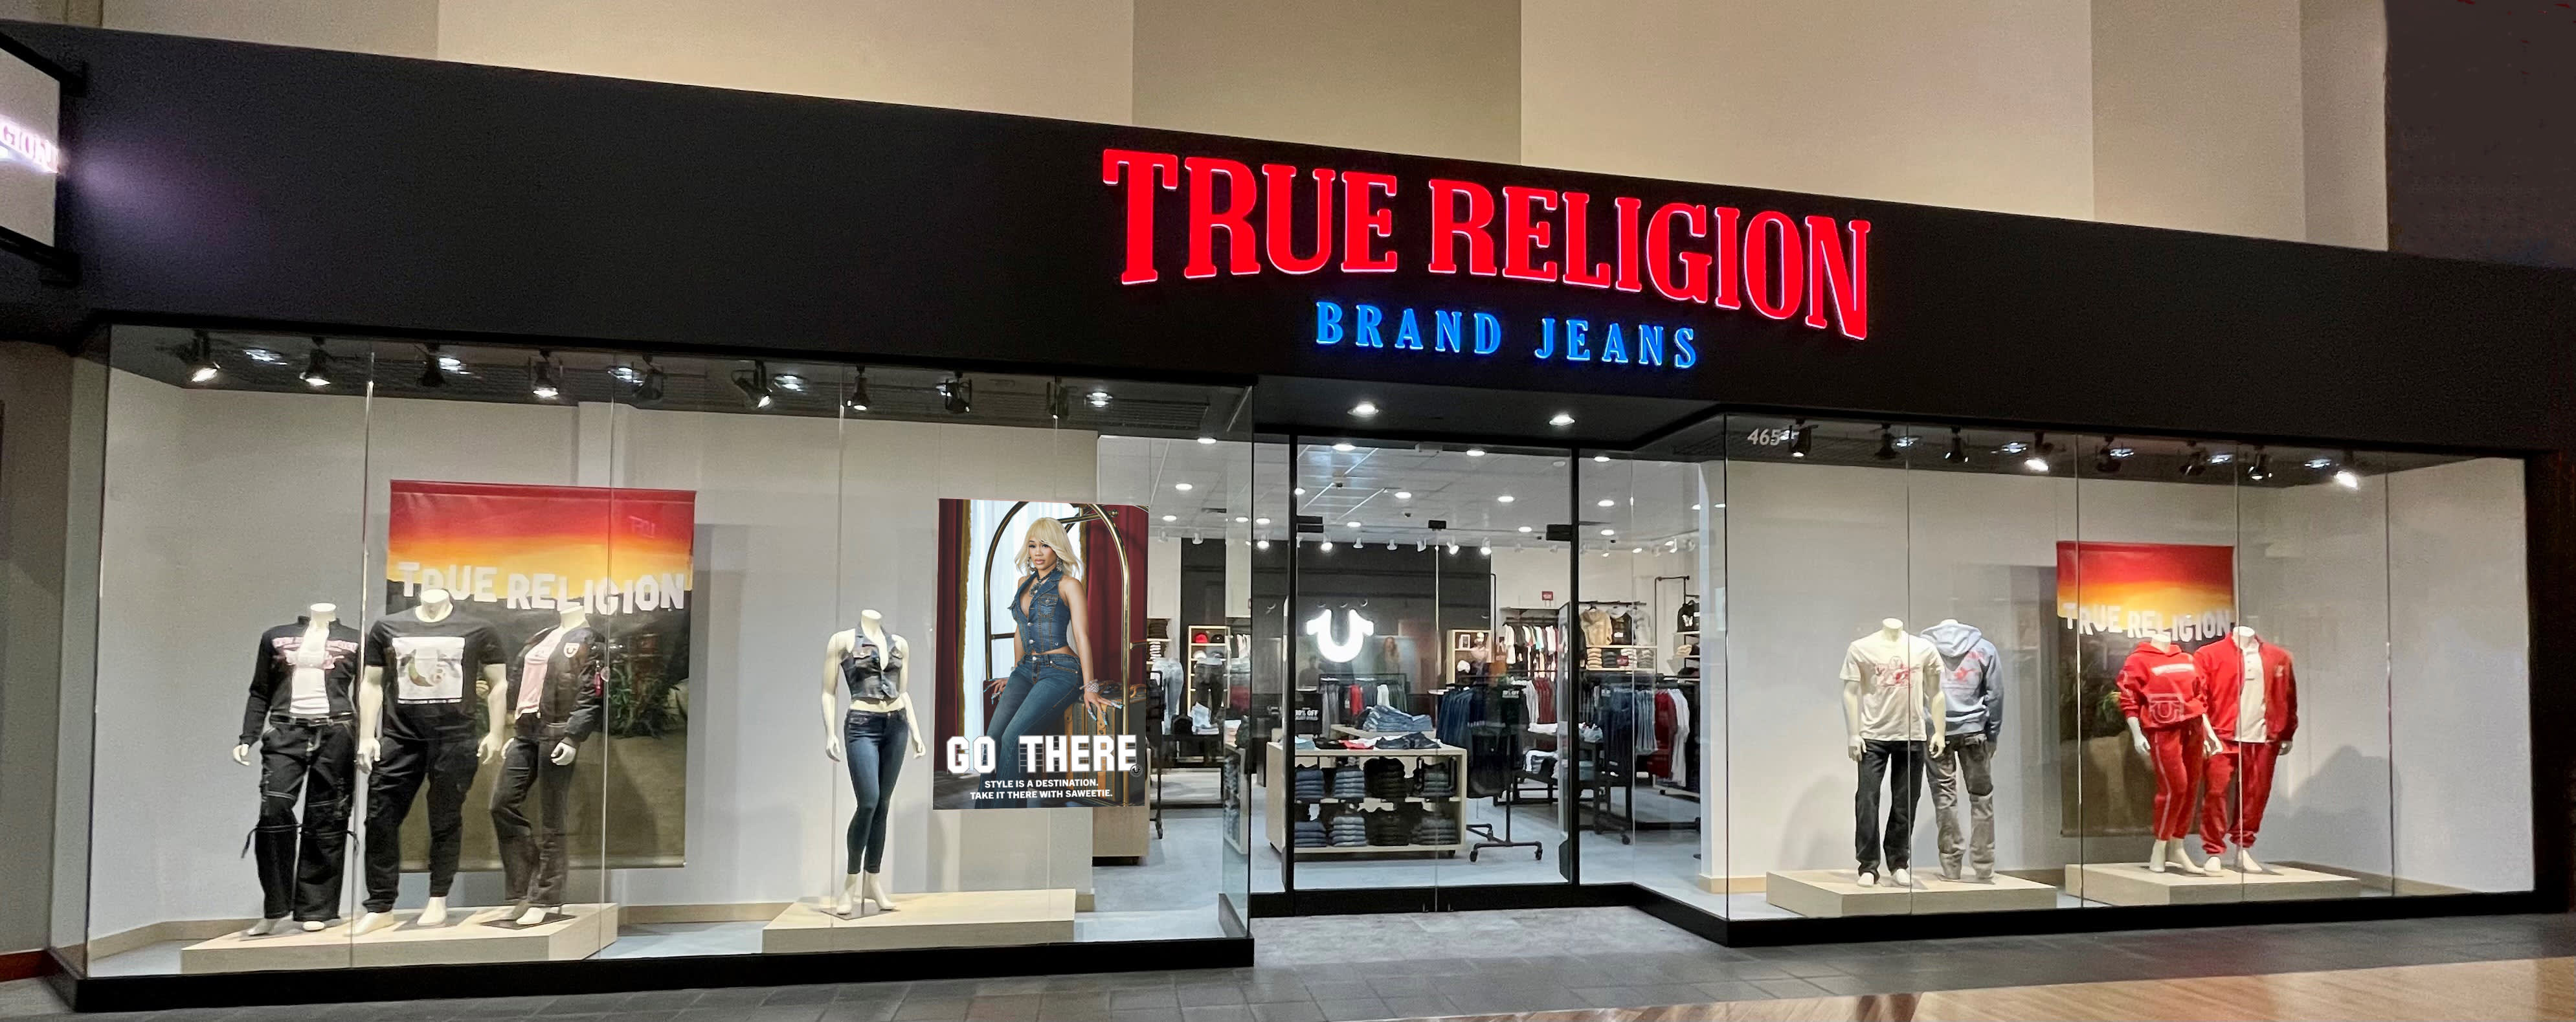 La marca de jeans True Religion está explorando una oferta